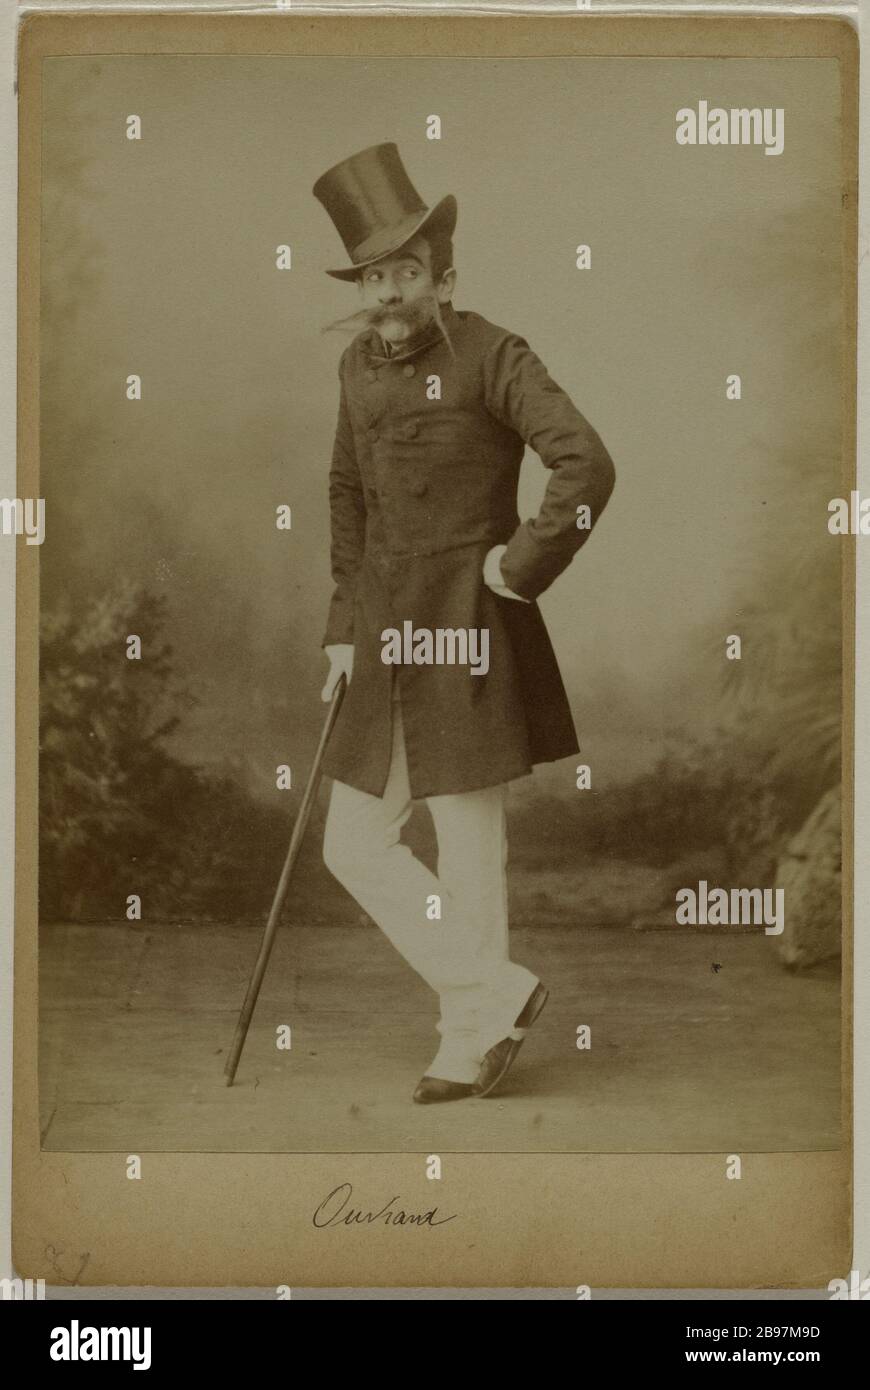 RITRATTO DI UN ATTORE Ritratto d'un comédien. Francia, 1881-1891. Anonima fotographie. Parigi, musée Carnavalet. Foto Stock